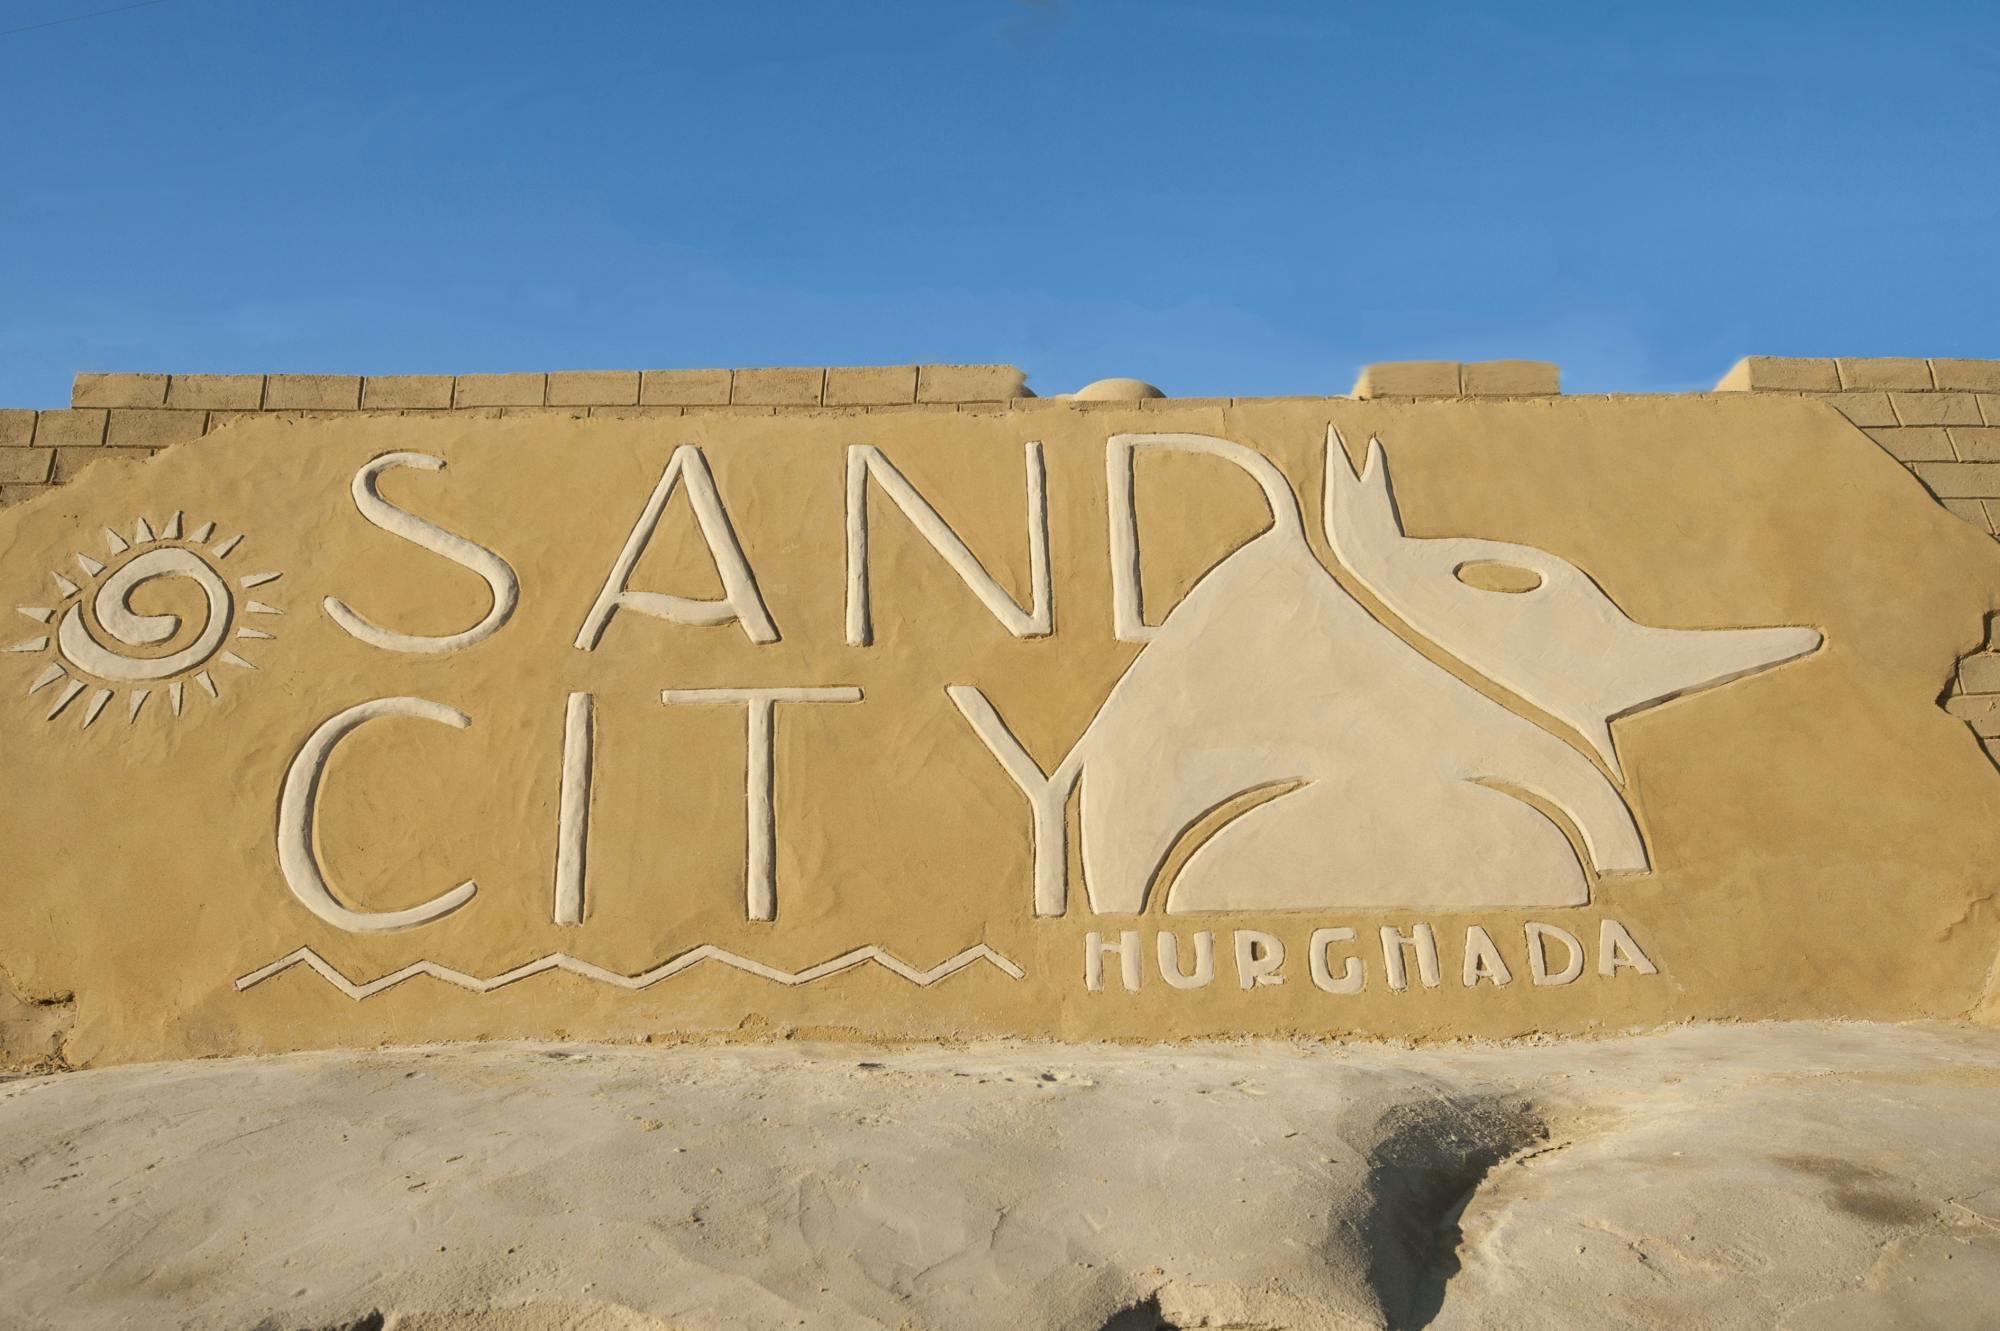 Ganztägige Führung durch Sand City und den Obstmarkt von Hurghada mit Abendessen